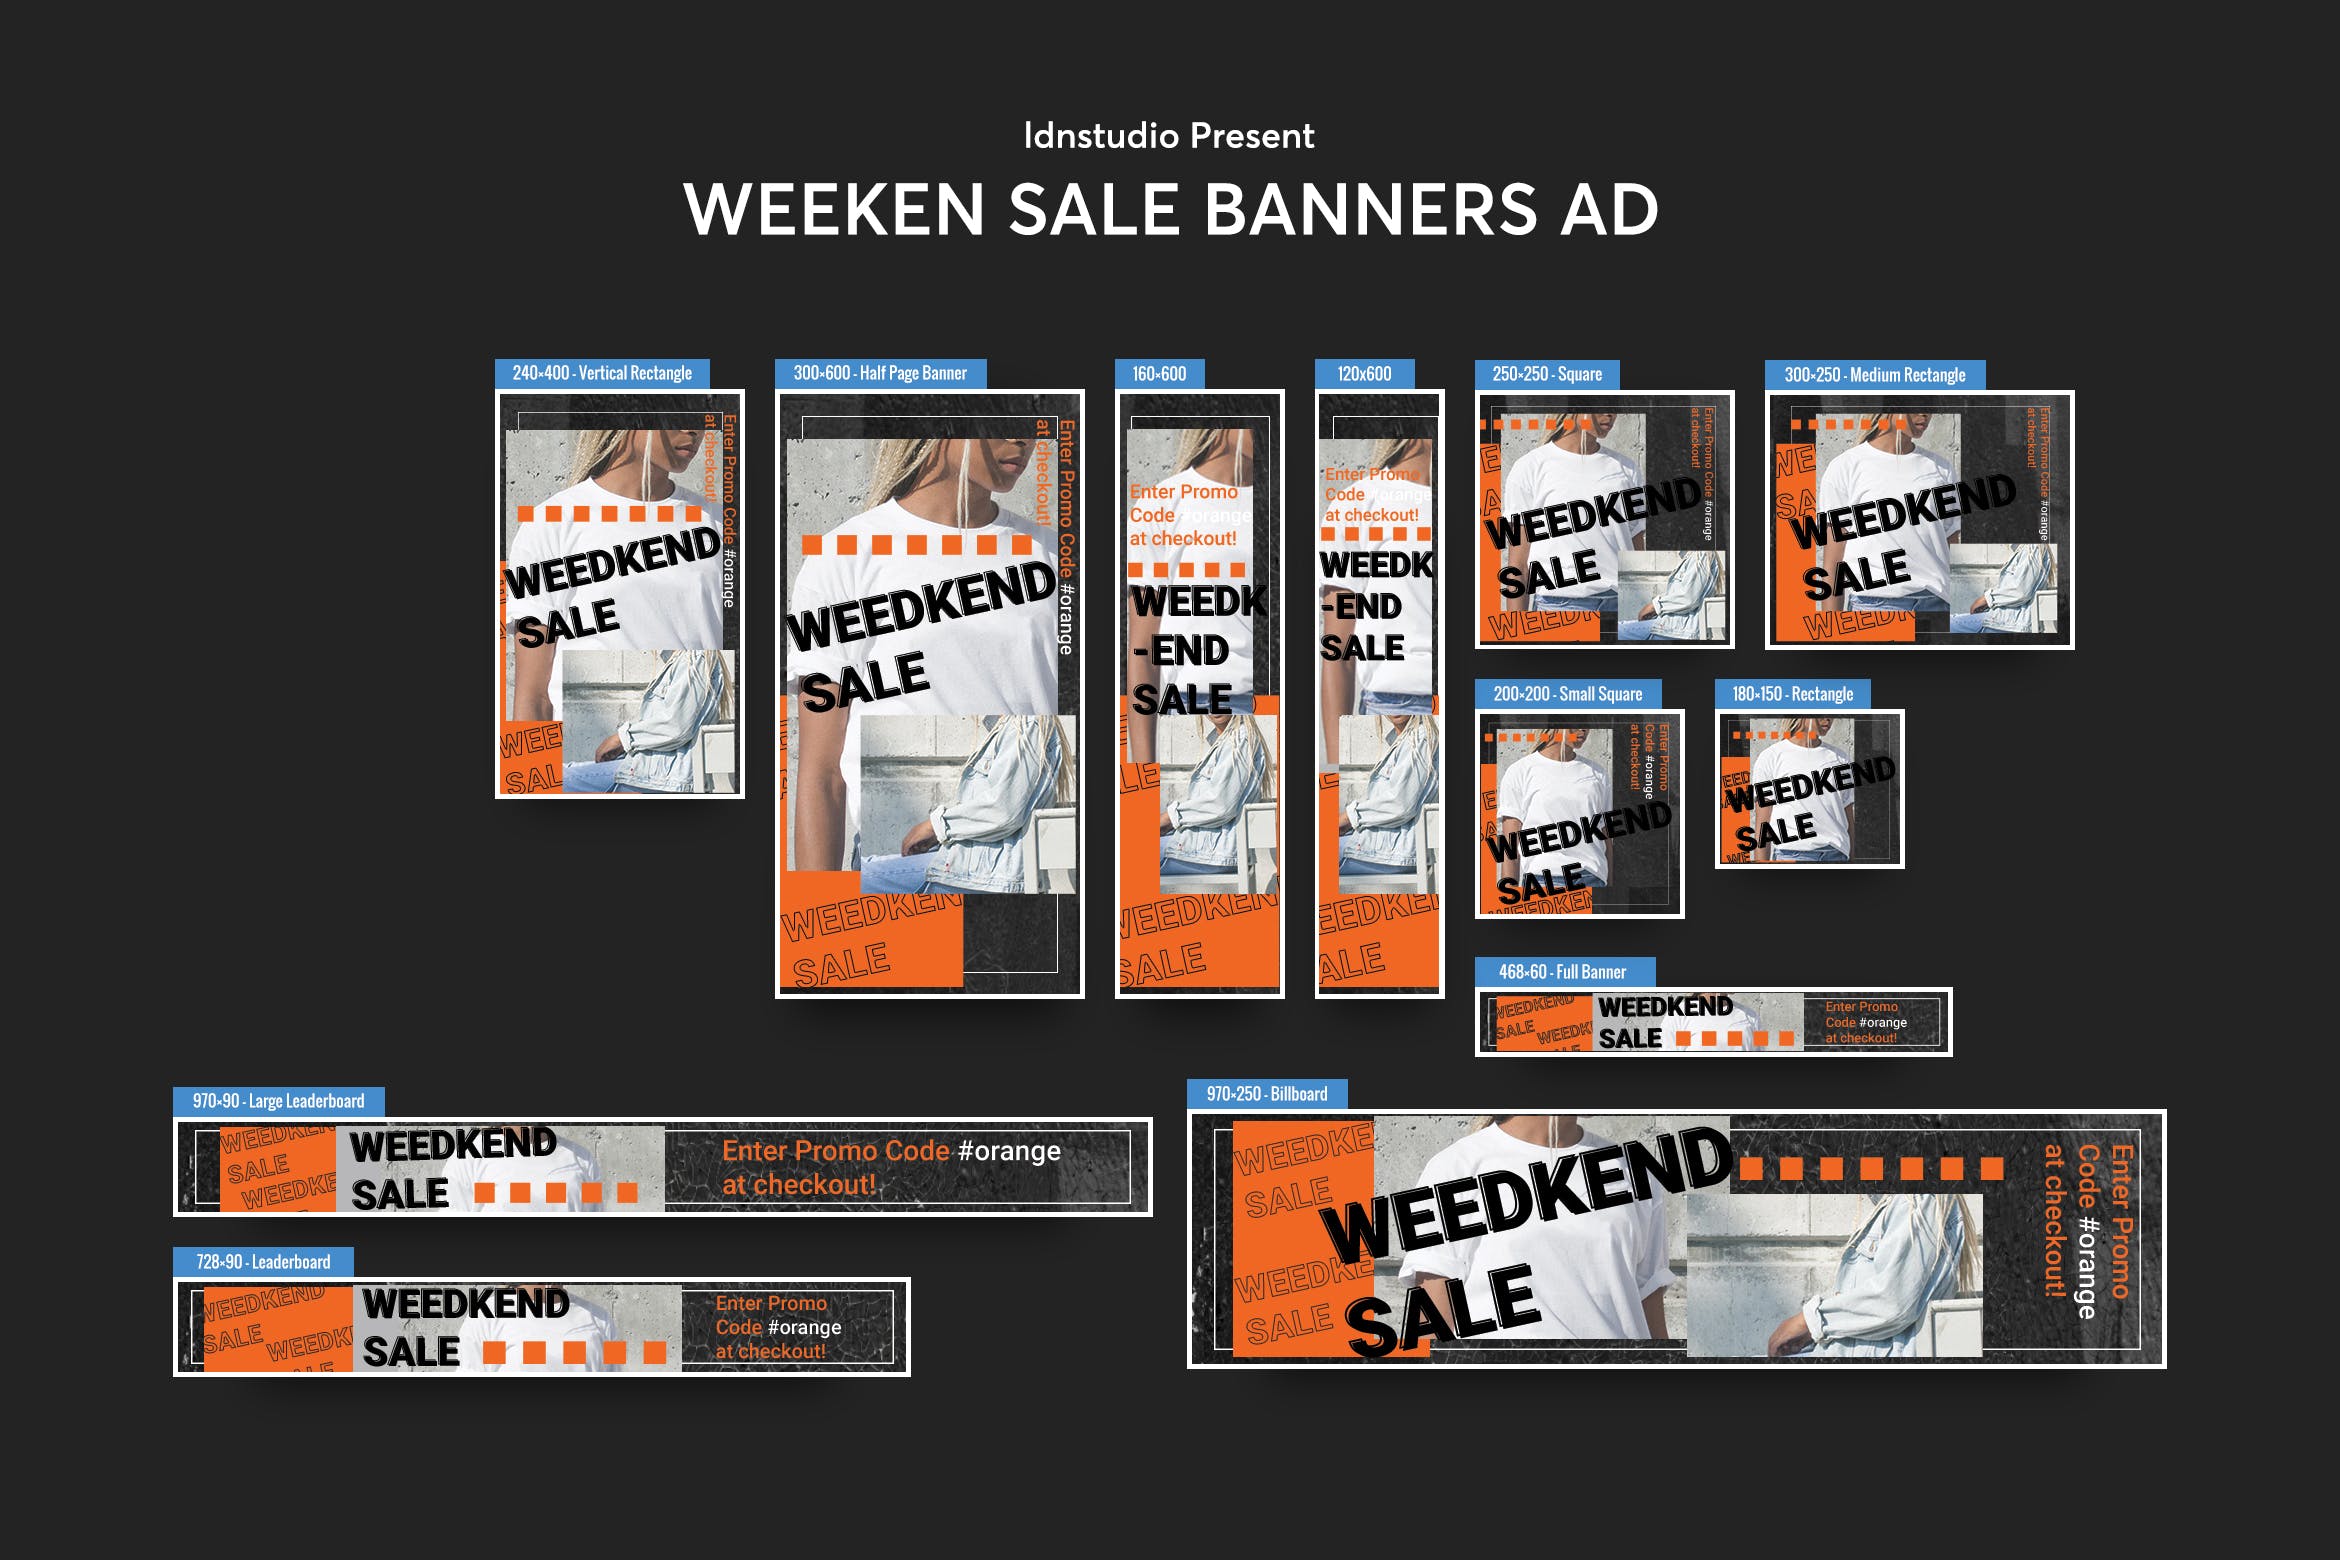 周末促销活动主题网站Banner横幅普贤居精选广告模板 Weeken Sale Banners Ad PSD Template插图